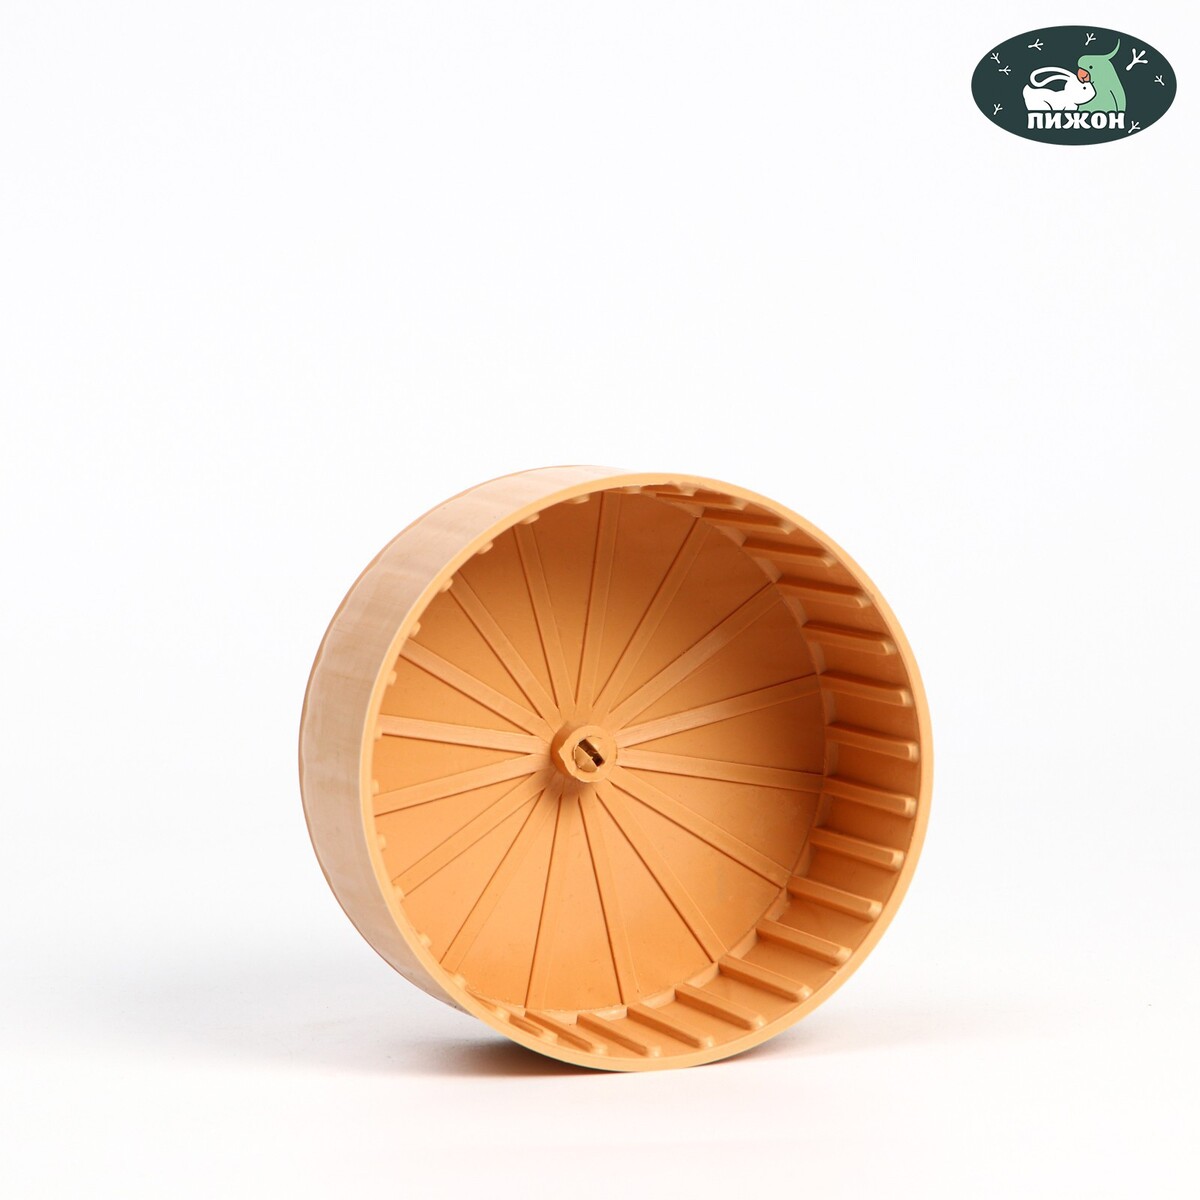 Колесо для грызунов полузакрытое пластиковое, без подставки, 14 см, бежевое колесо для грызунов тихое 14 см желтое